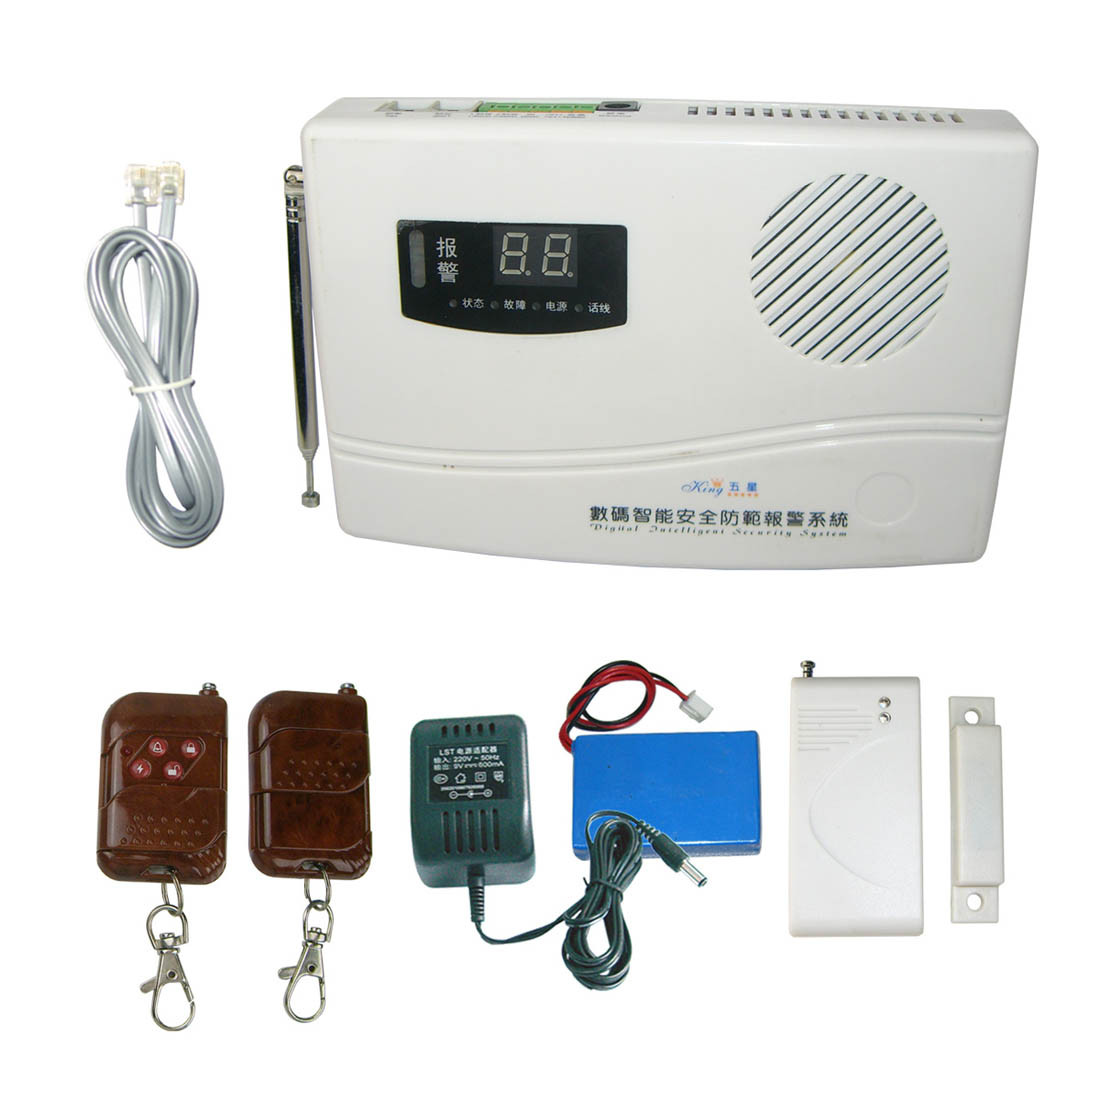 Evde güvenliği sağlamak için kablosuz hırsız alarm sistemi (AF-001)